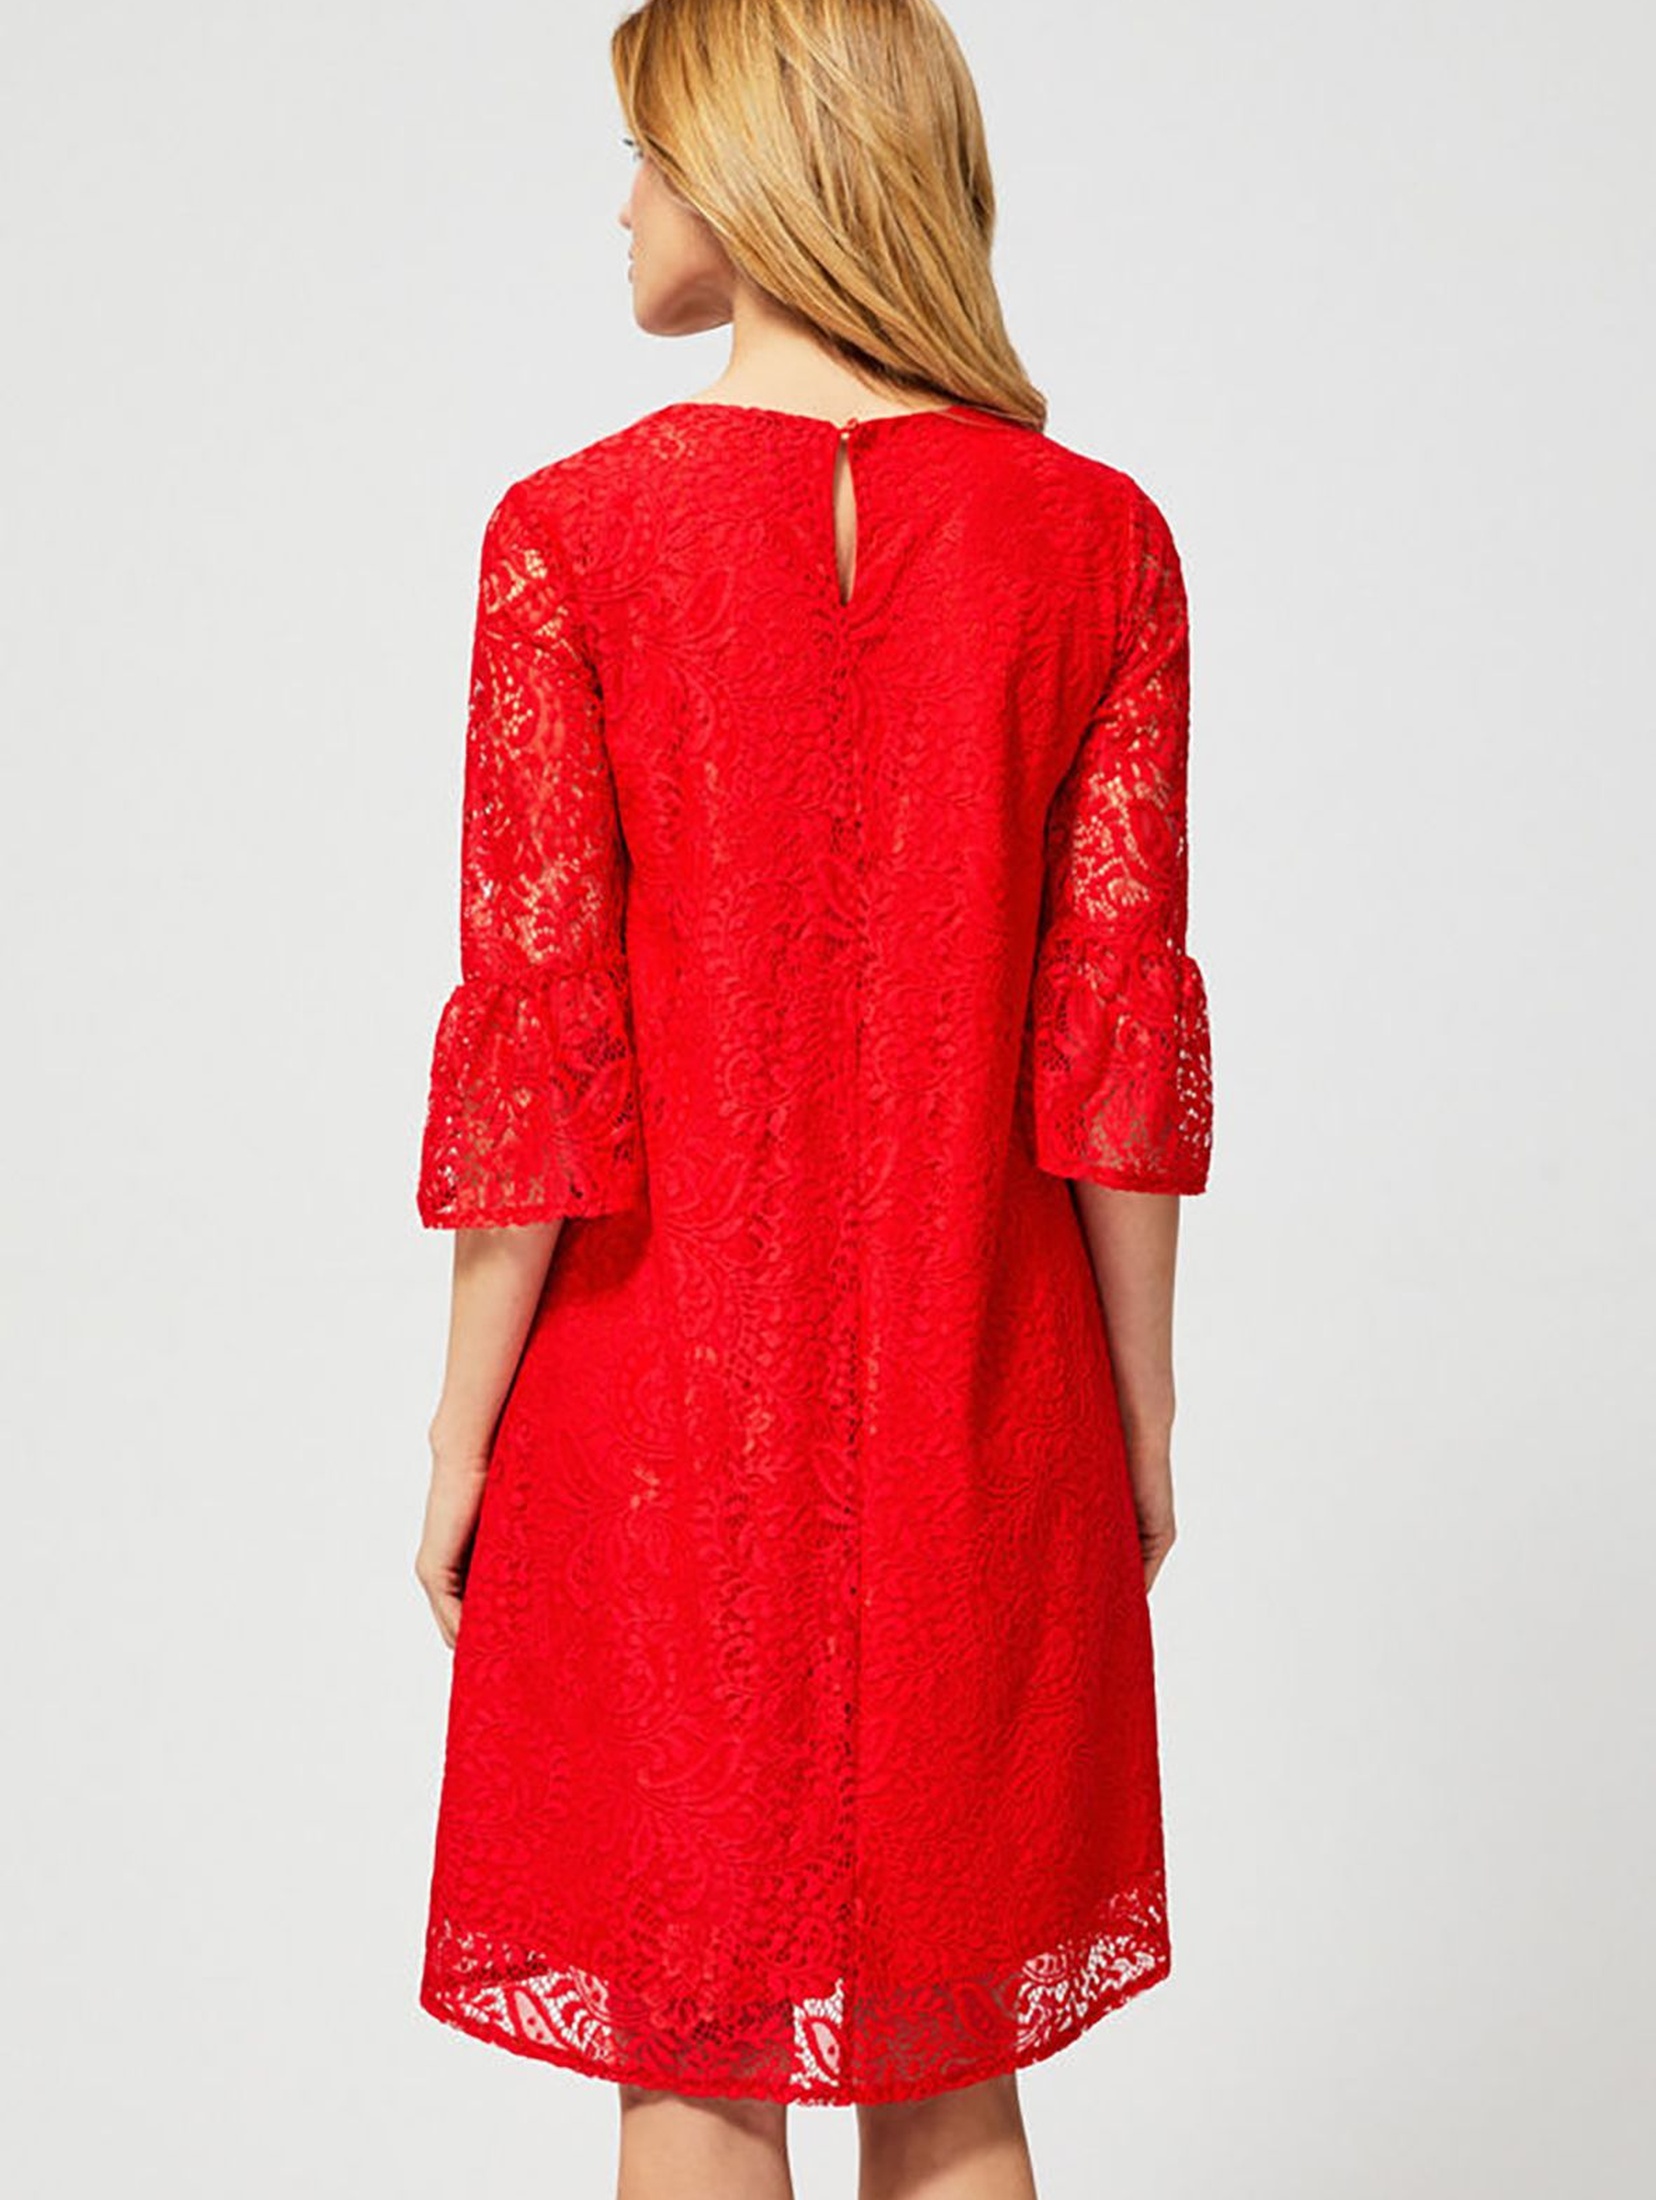 Koronkowa sukienka z rękawami 3/4 zapinana na guzik - czerwona